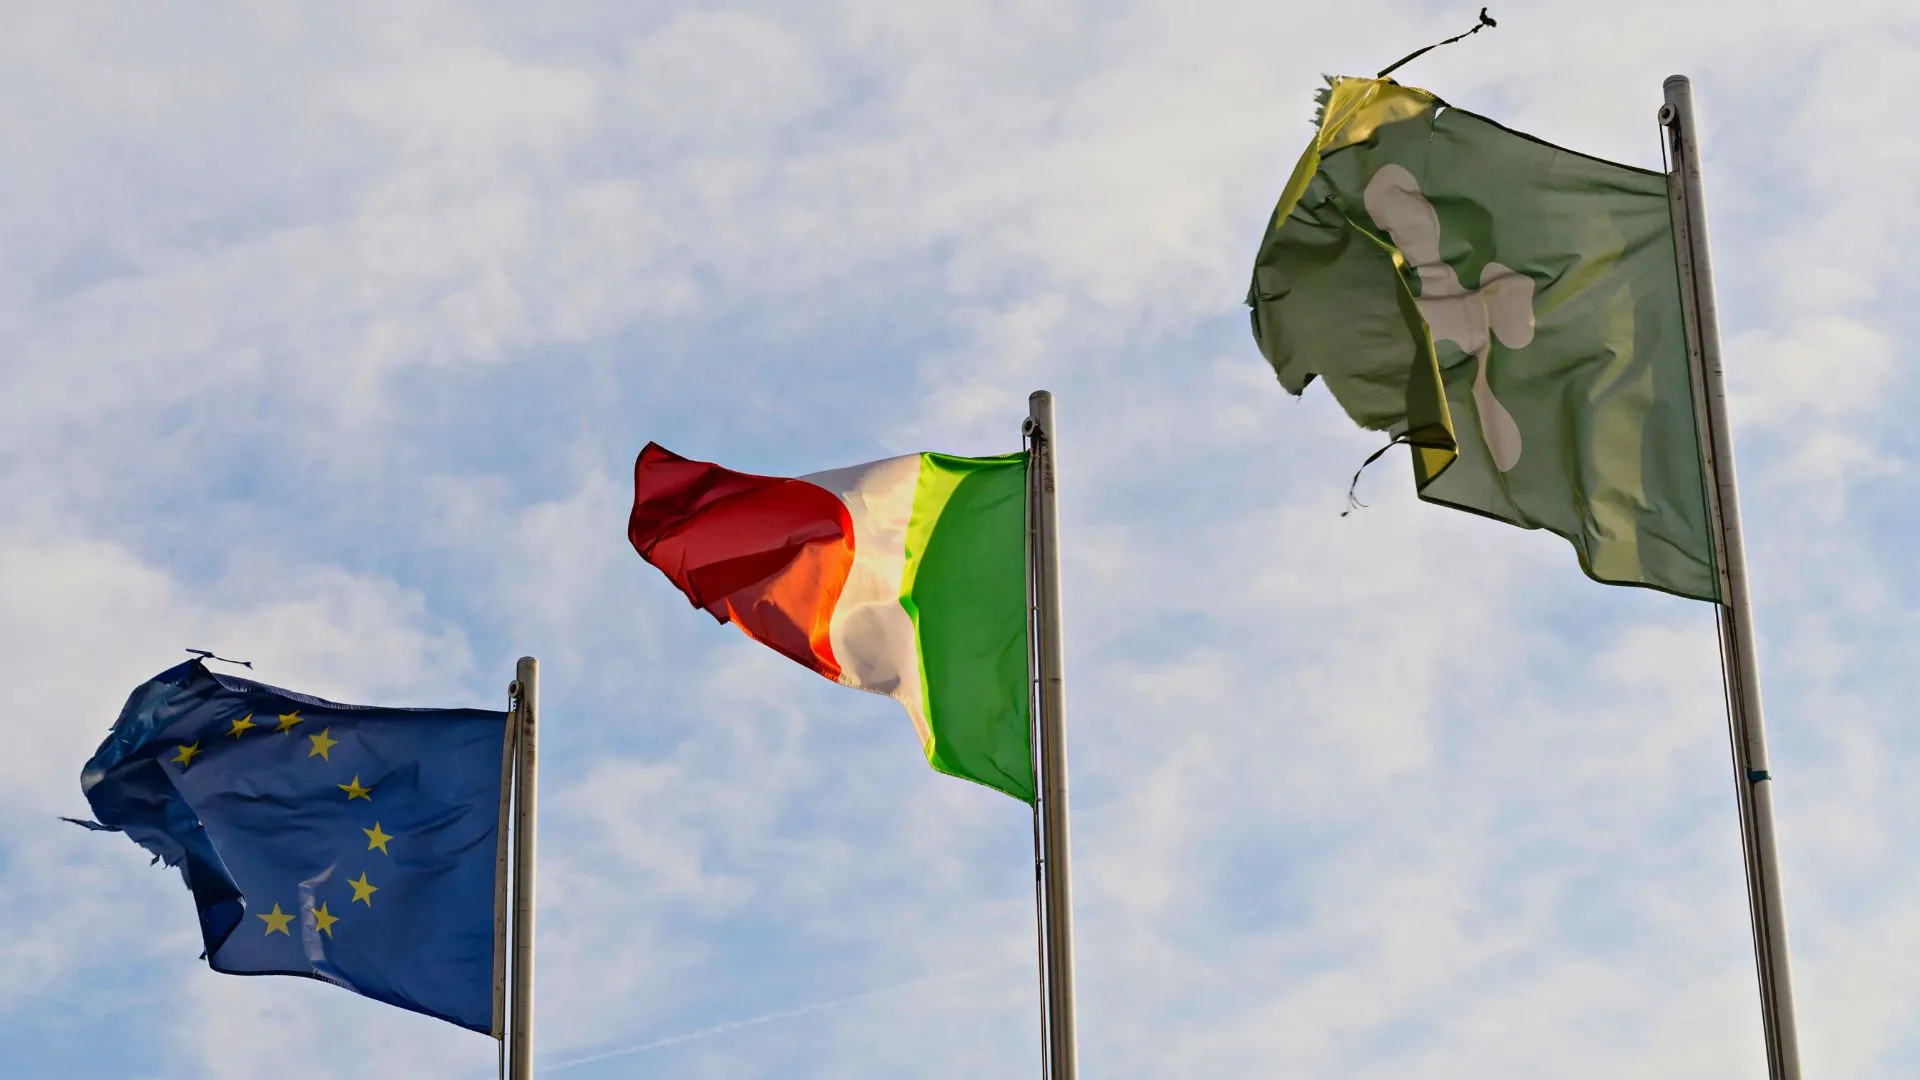 immagine decorativa con bandiera eu, bandiera italiana e bandiera di regione lombardia